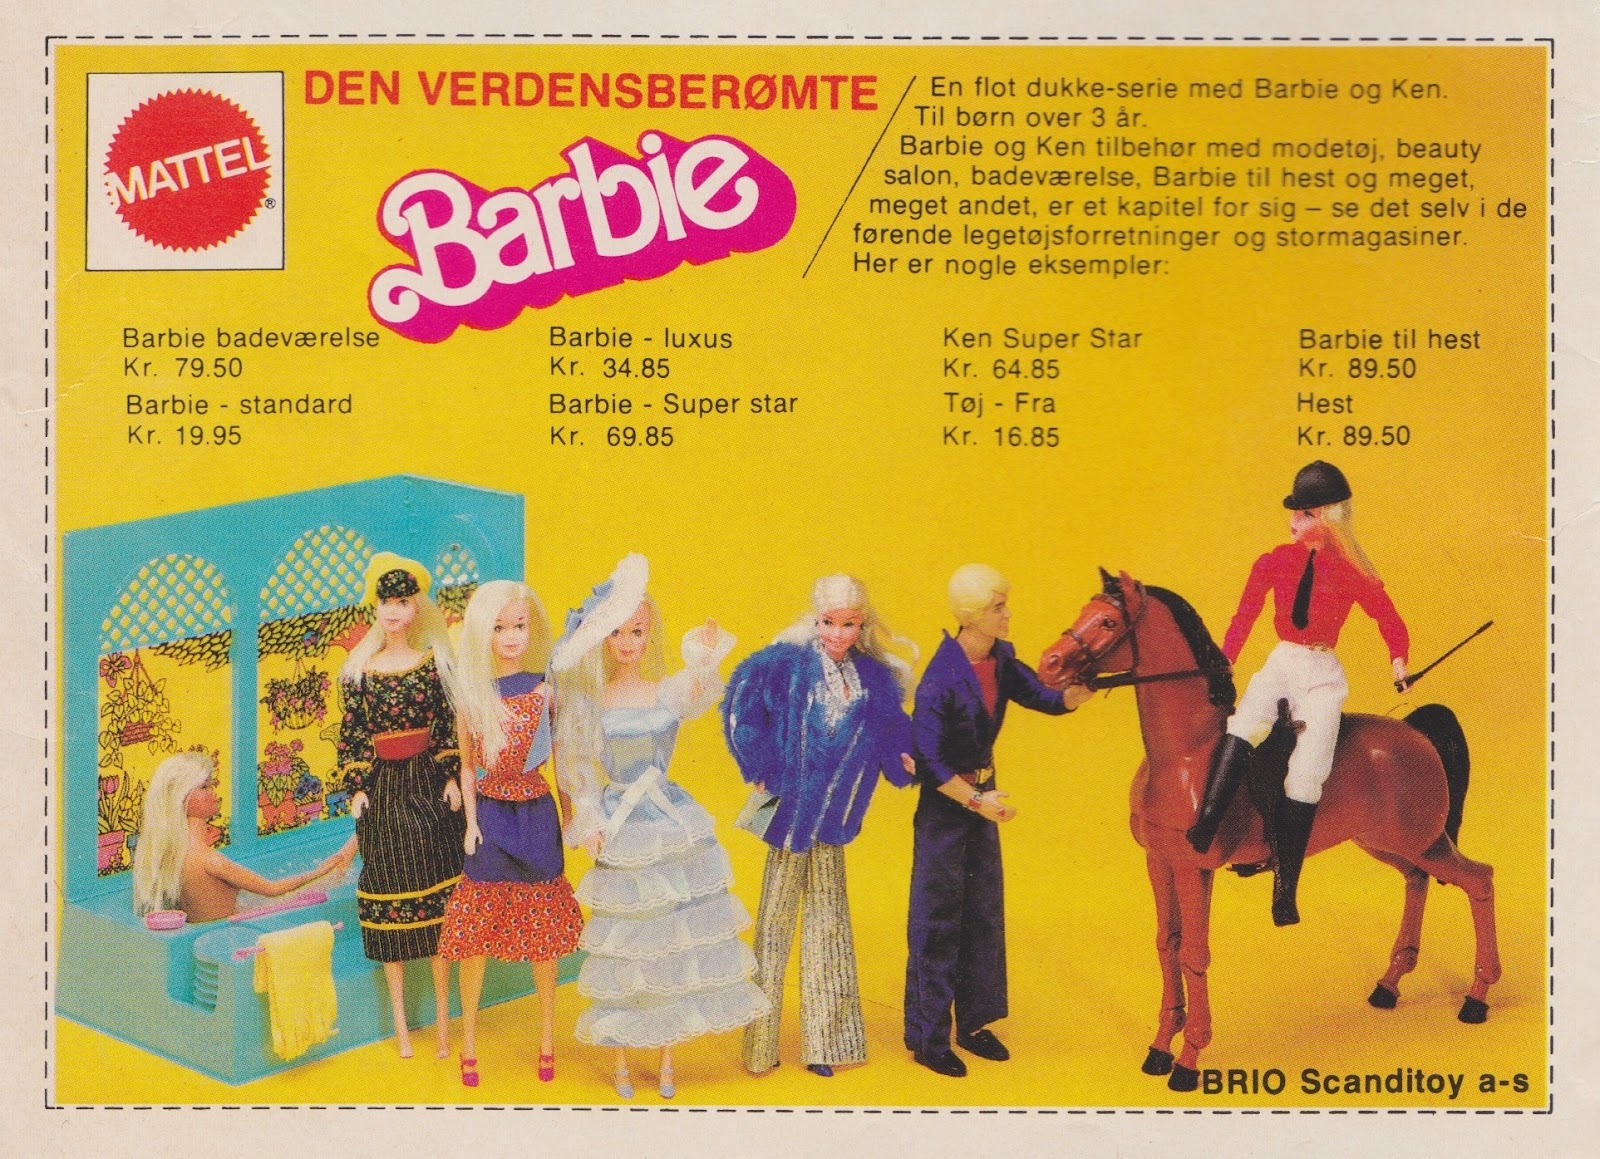 Tilbage Datiden - gamle danske reklamer og andet godt: Den verdensberømte Barbie